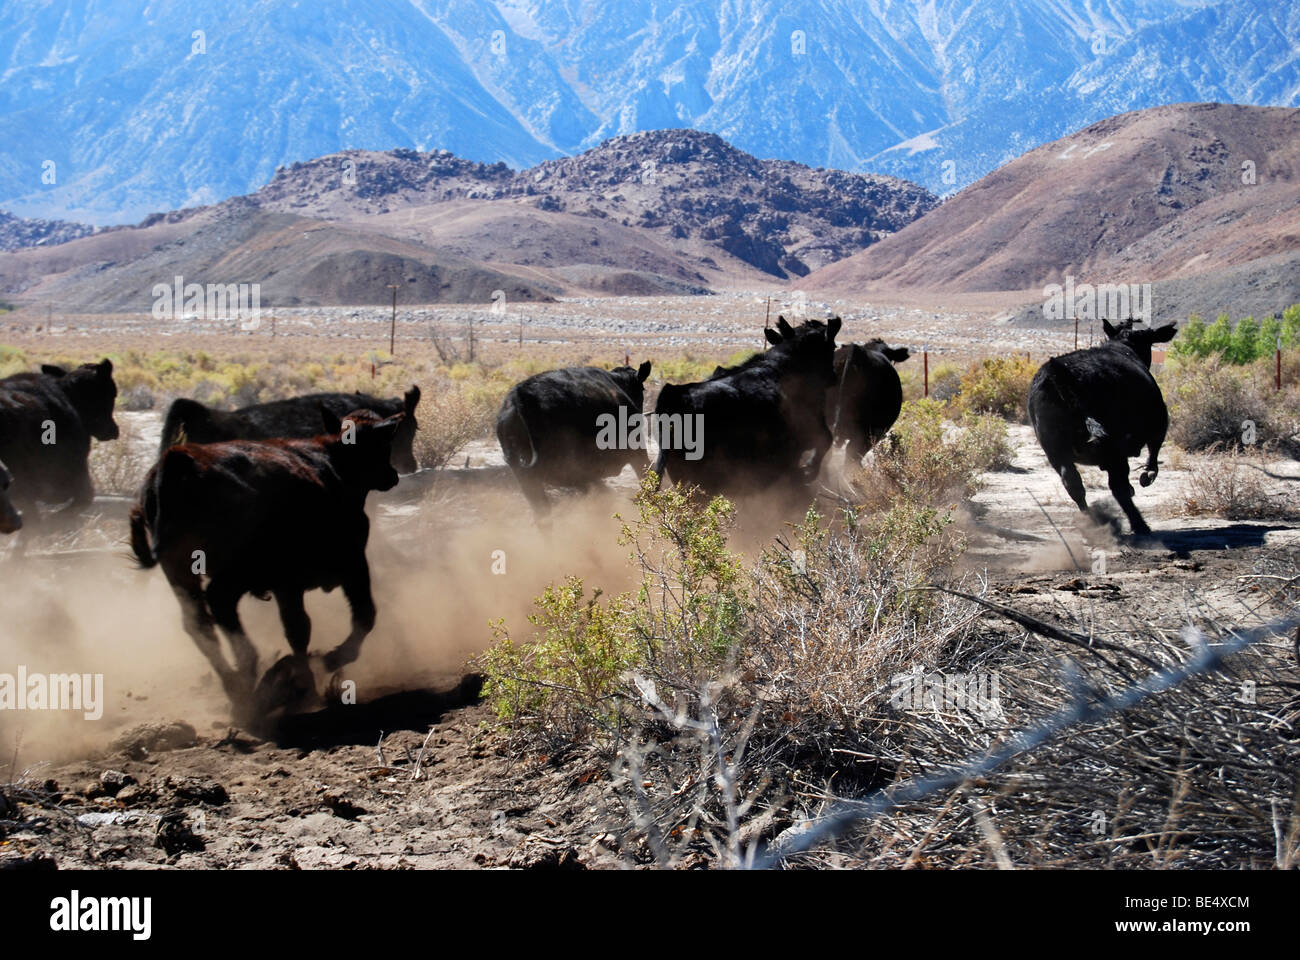 Manada de ganado que se ejecuta en un rango abierto en las altas sierras de California Foto de stock